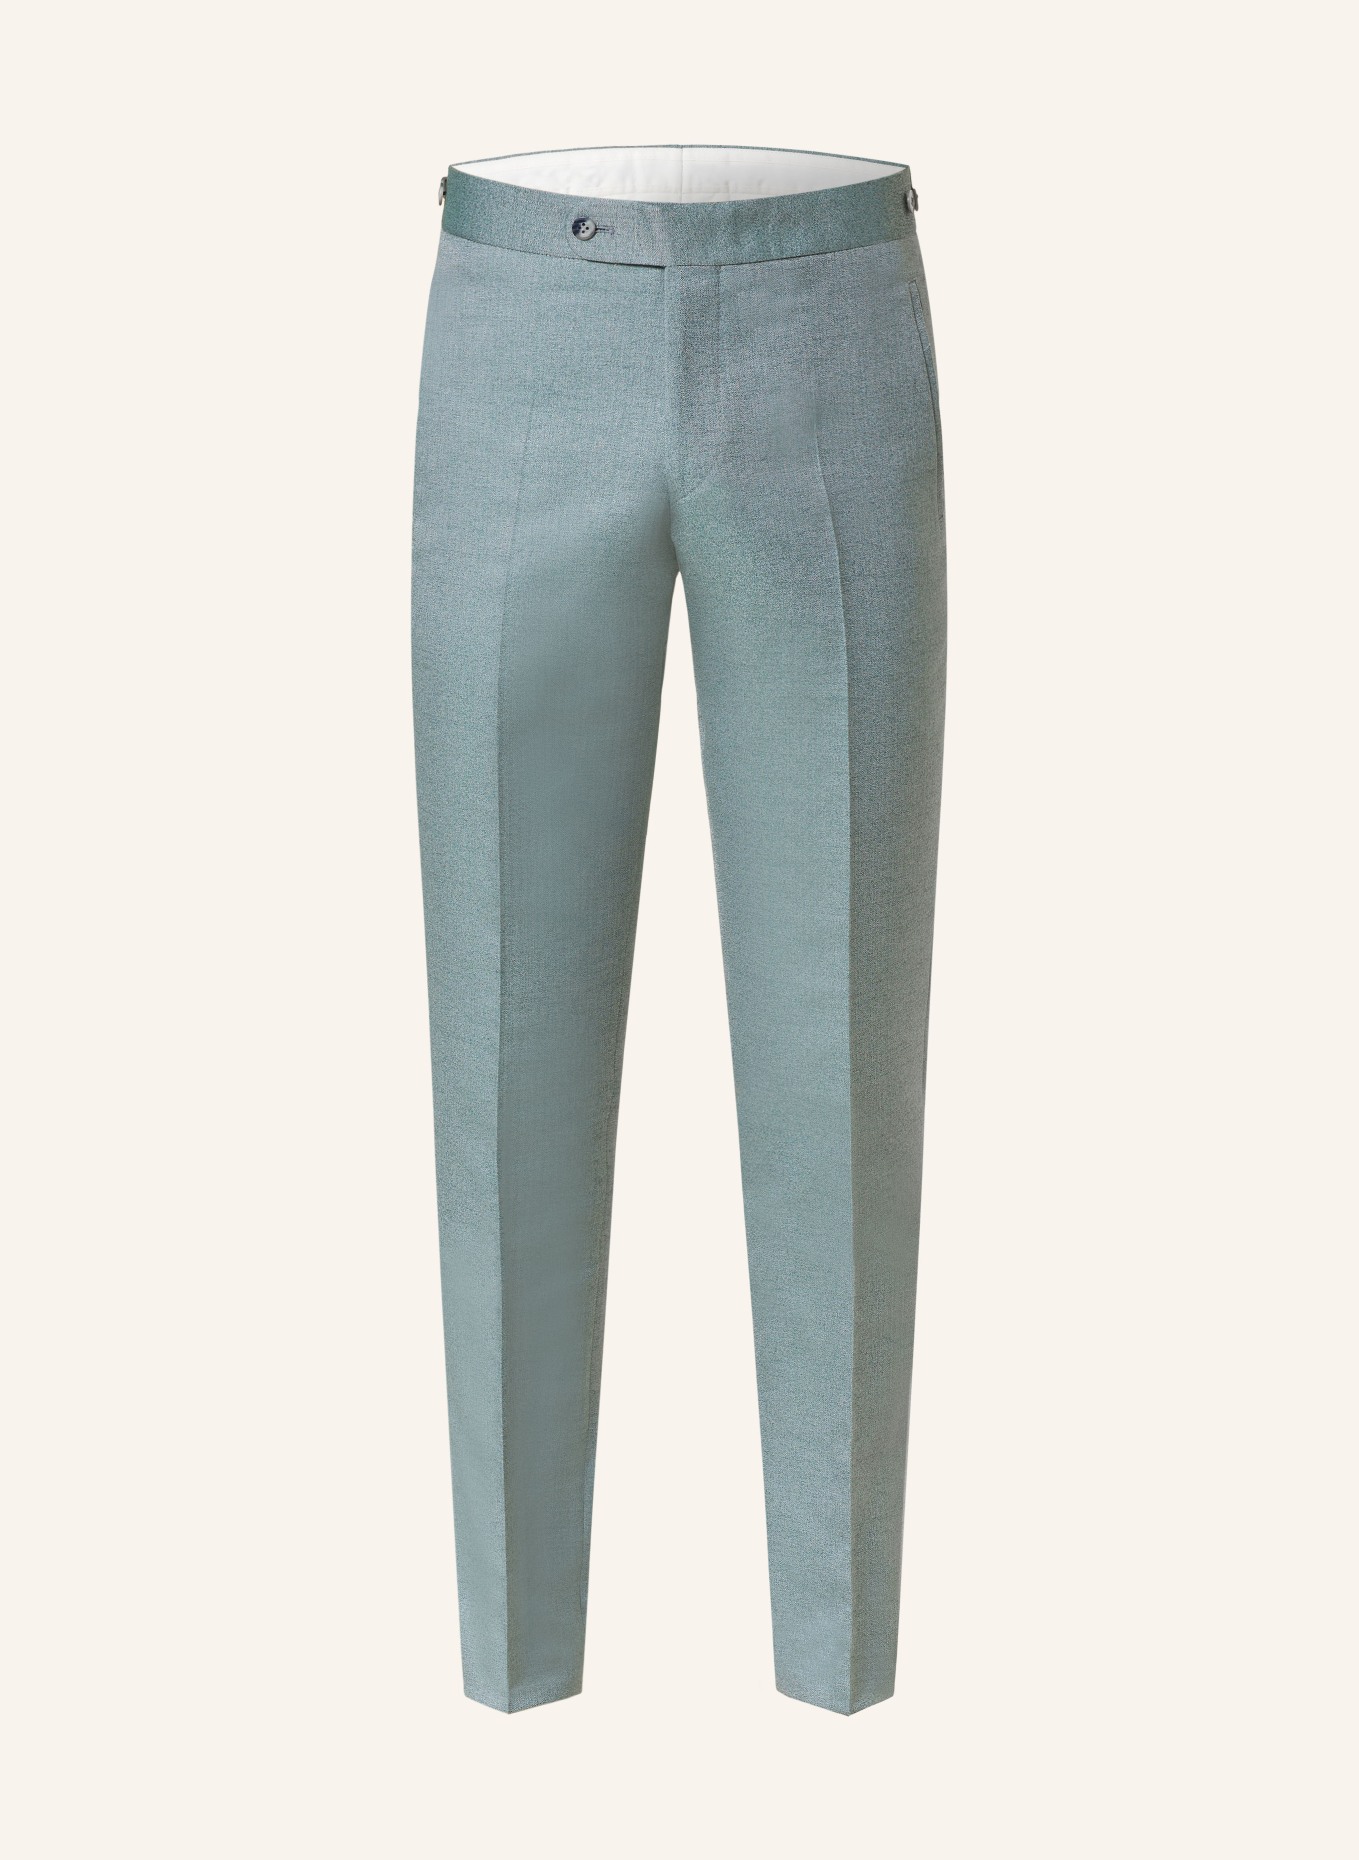 WILVORST Suit trousers extra slim fit, Color: 045 grün (Image 1)